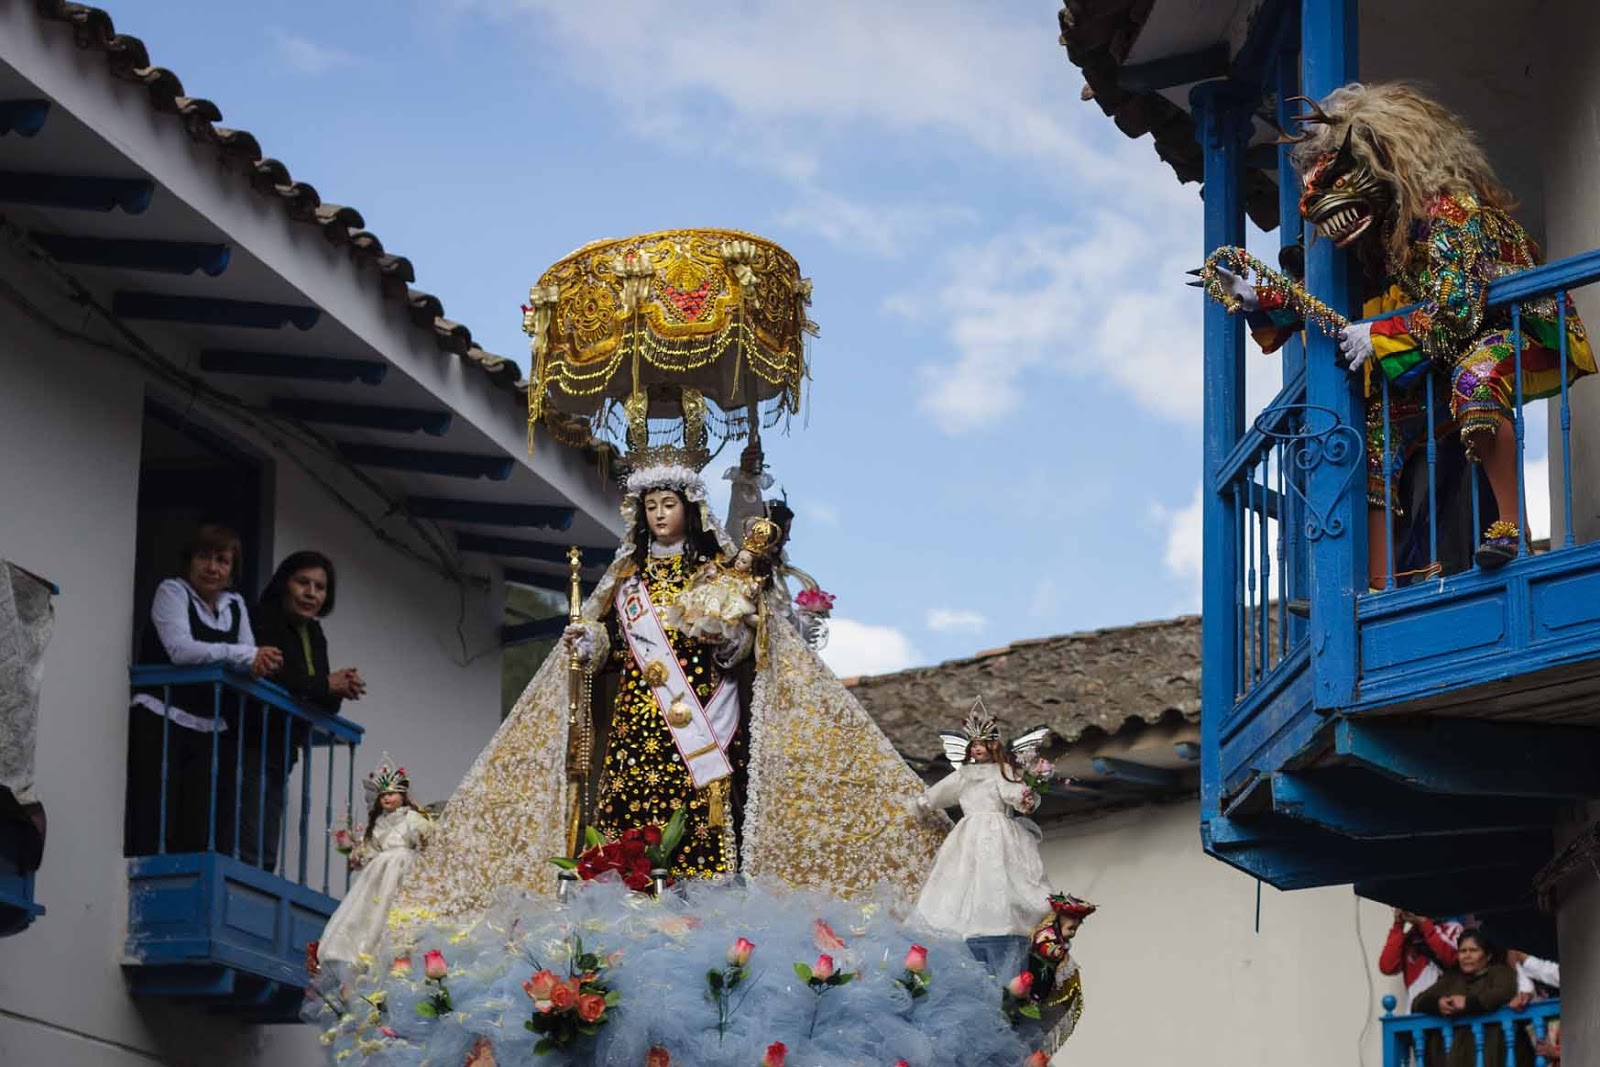 July 16 - Fiesta Virgen del Carmen in Peru.